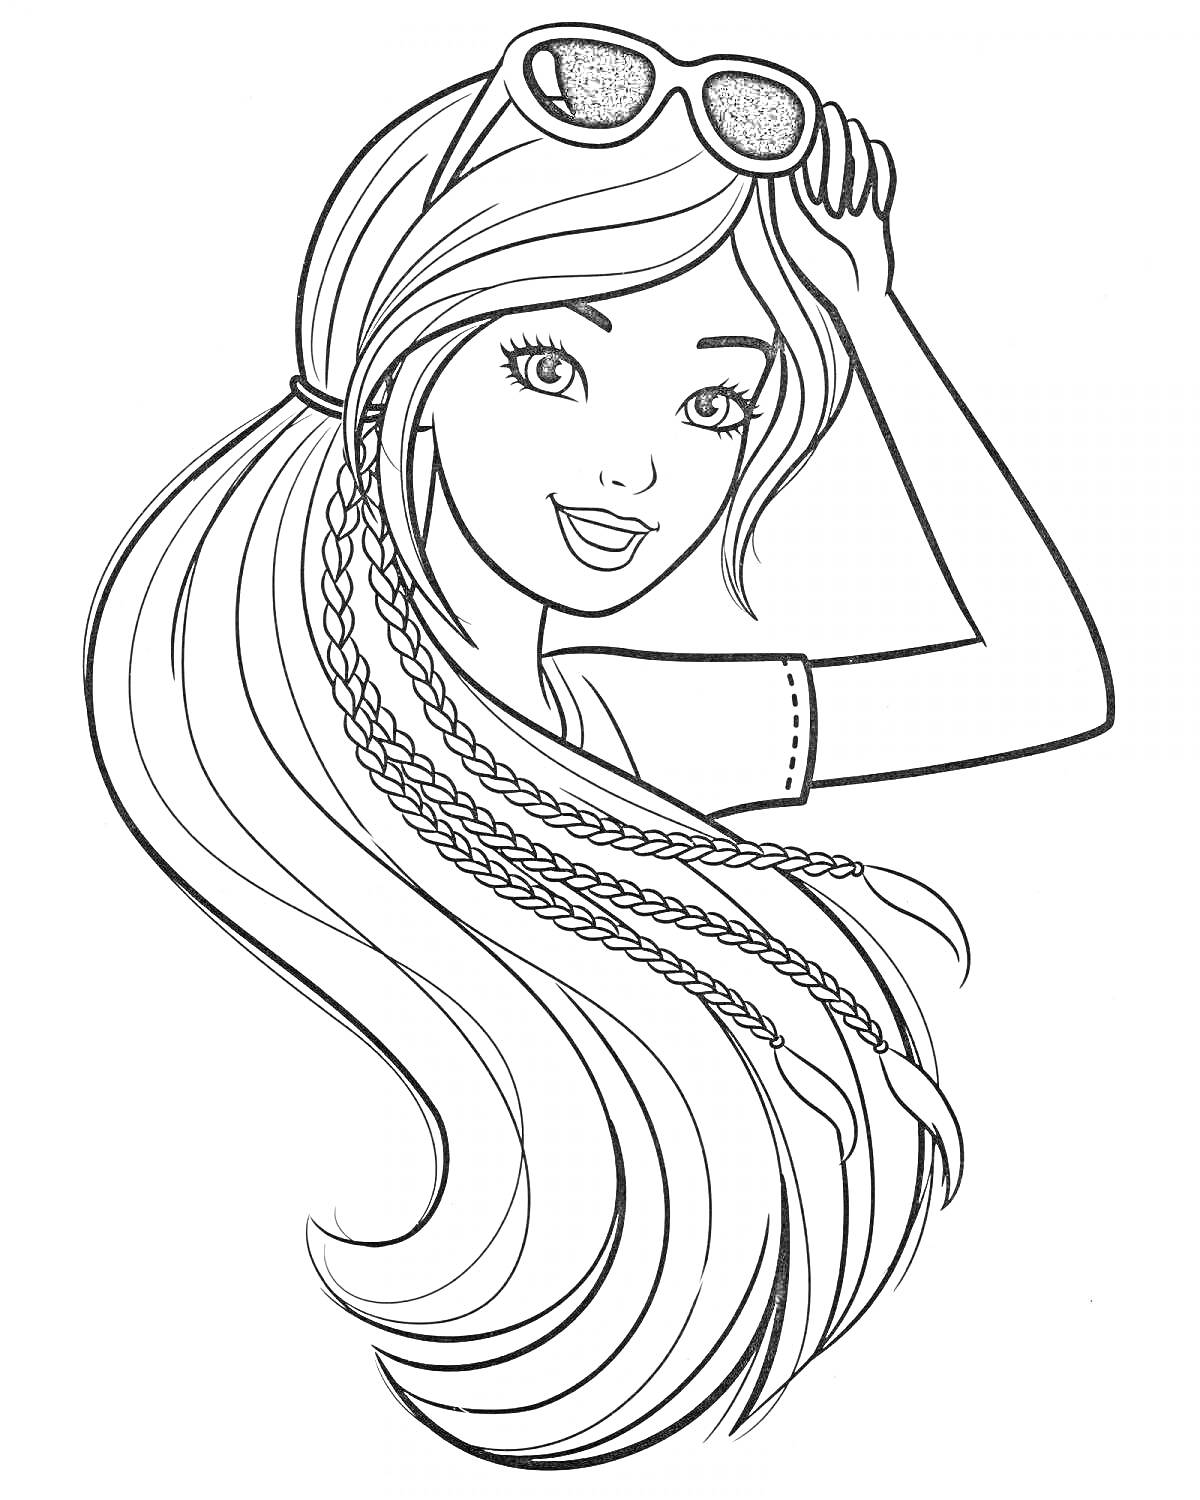 Раскраска Девушка с длинными распущенными волосами и косичками, в очках на голове, поднимающая руку к лицу